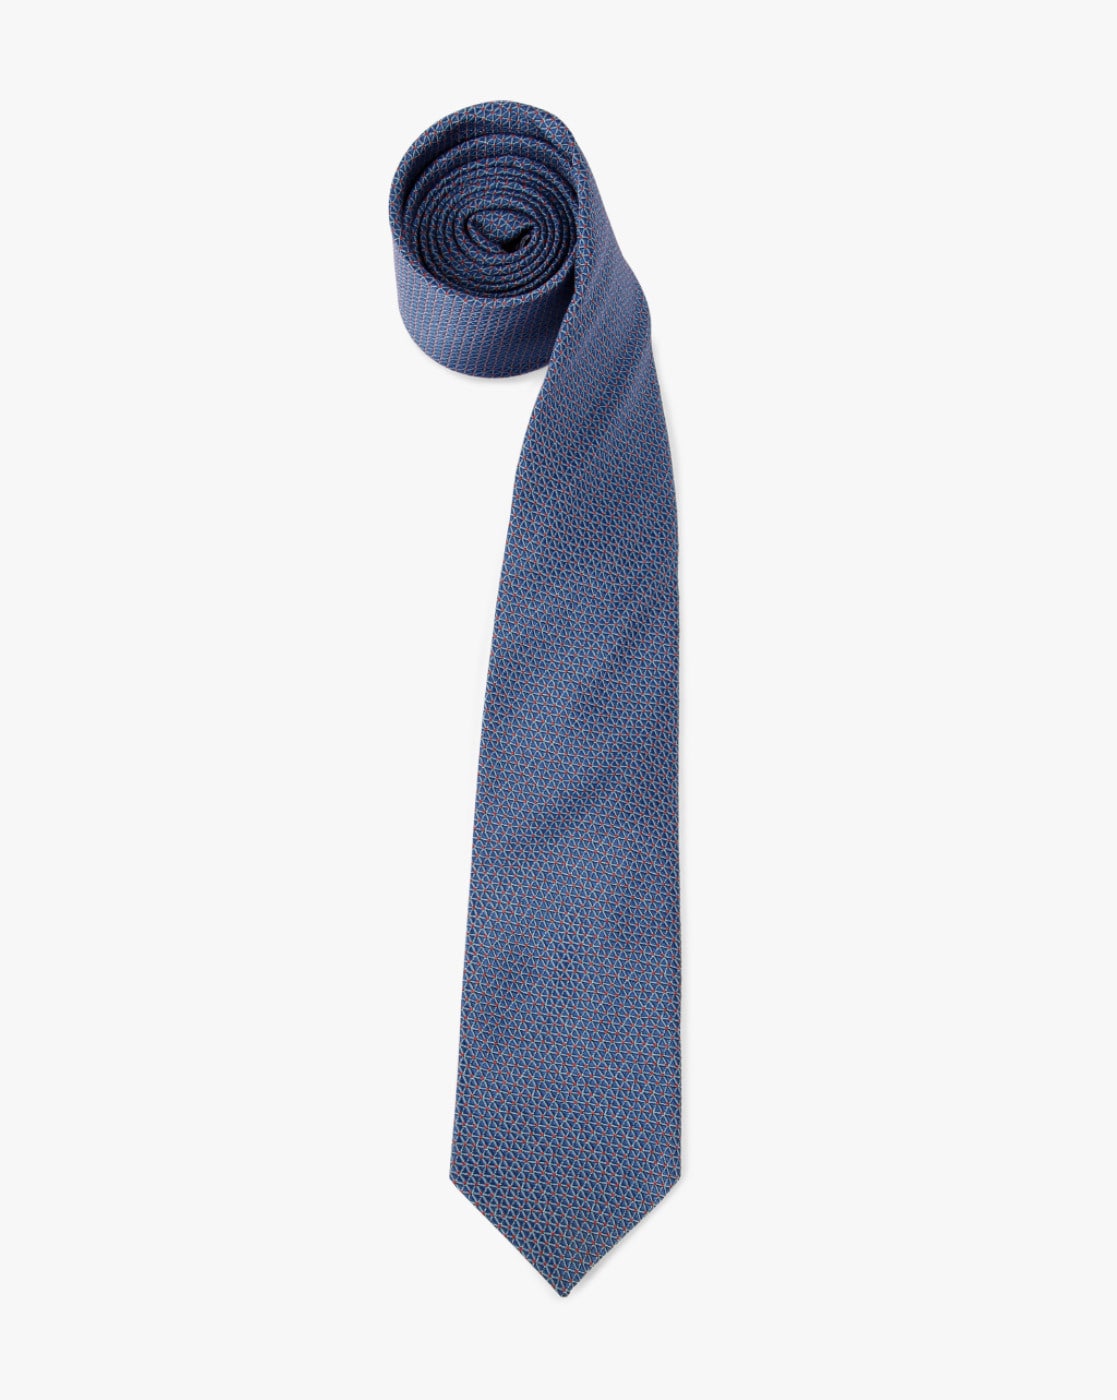 formal tie online